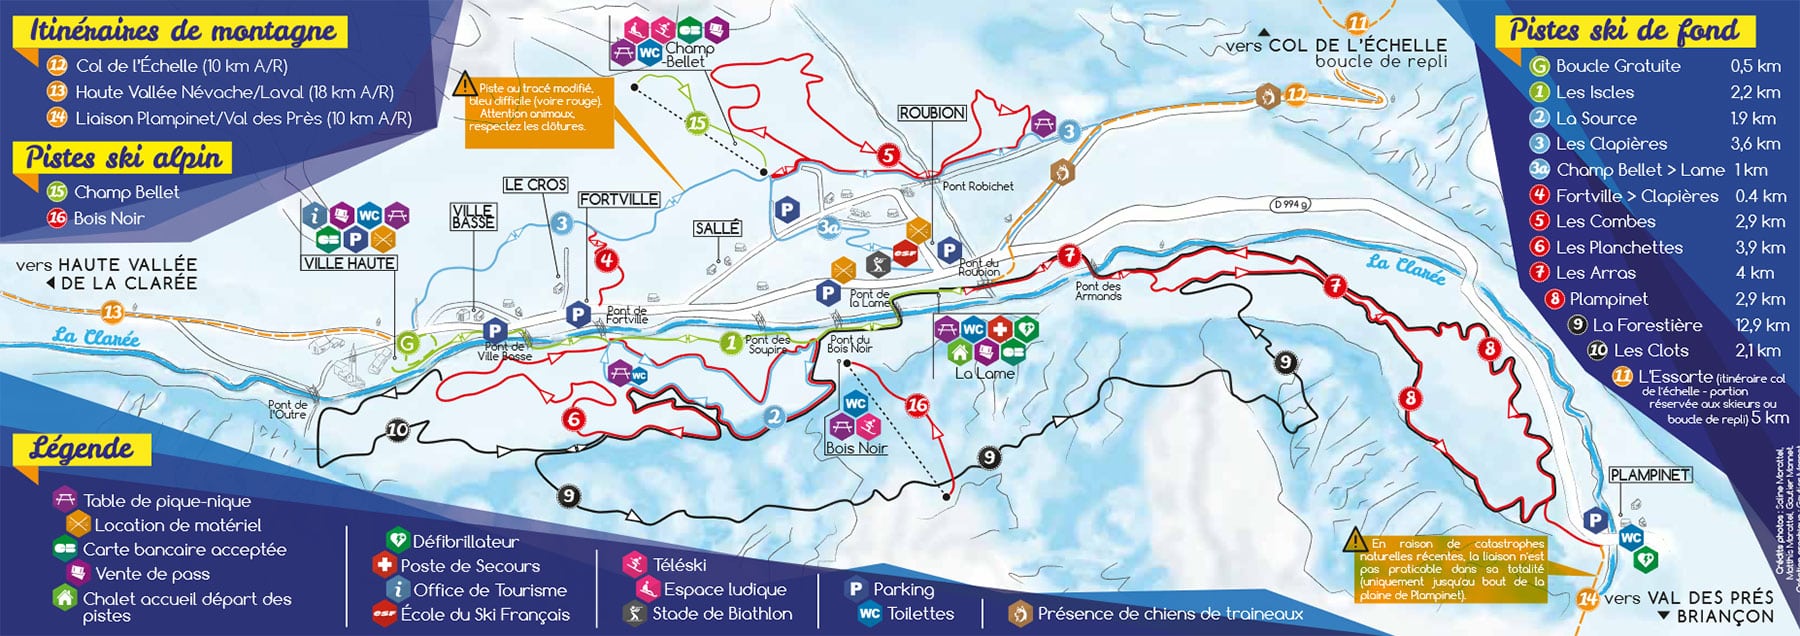 plan des pistes ski de fond ski nordique Nevache Claree